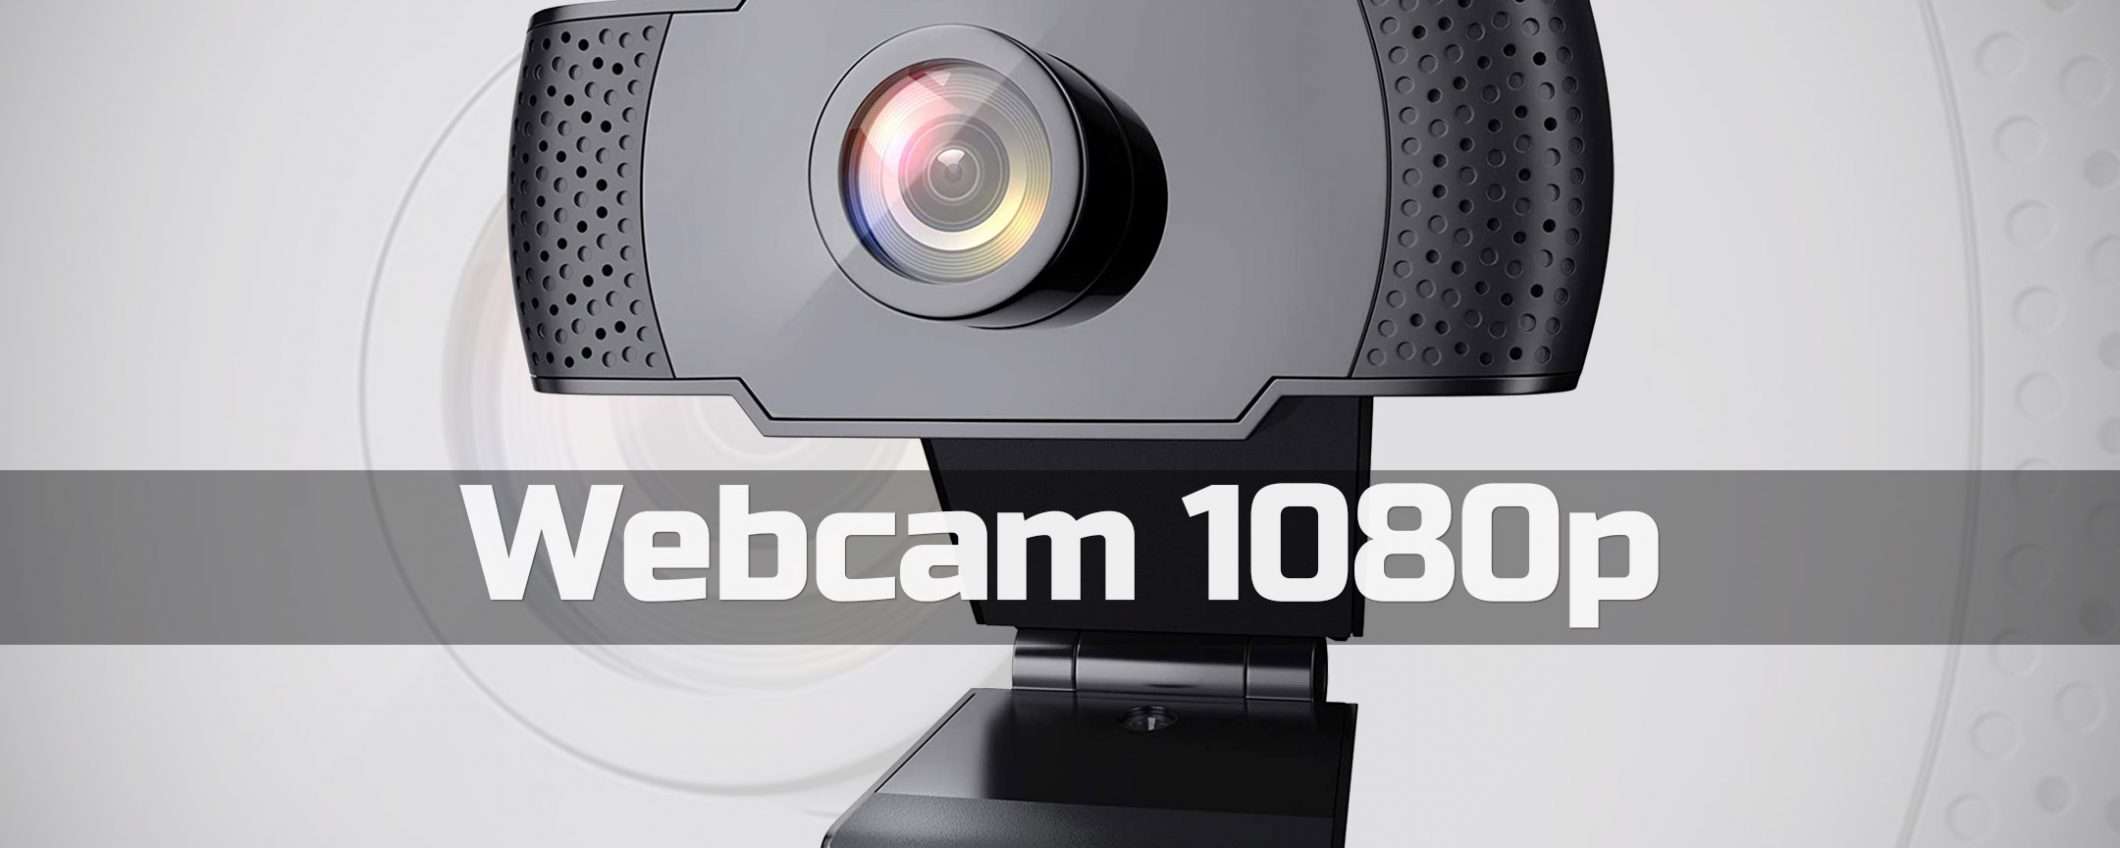 Webcam 1080p, lo sconto che anticipa il Prime Day